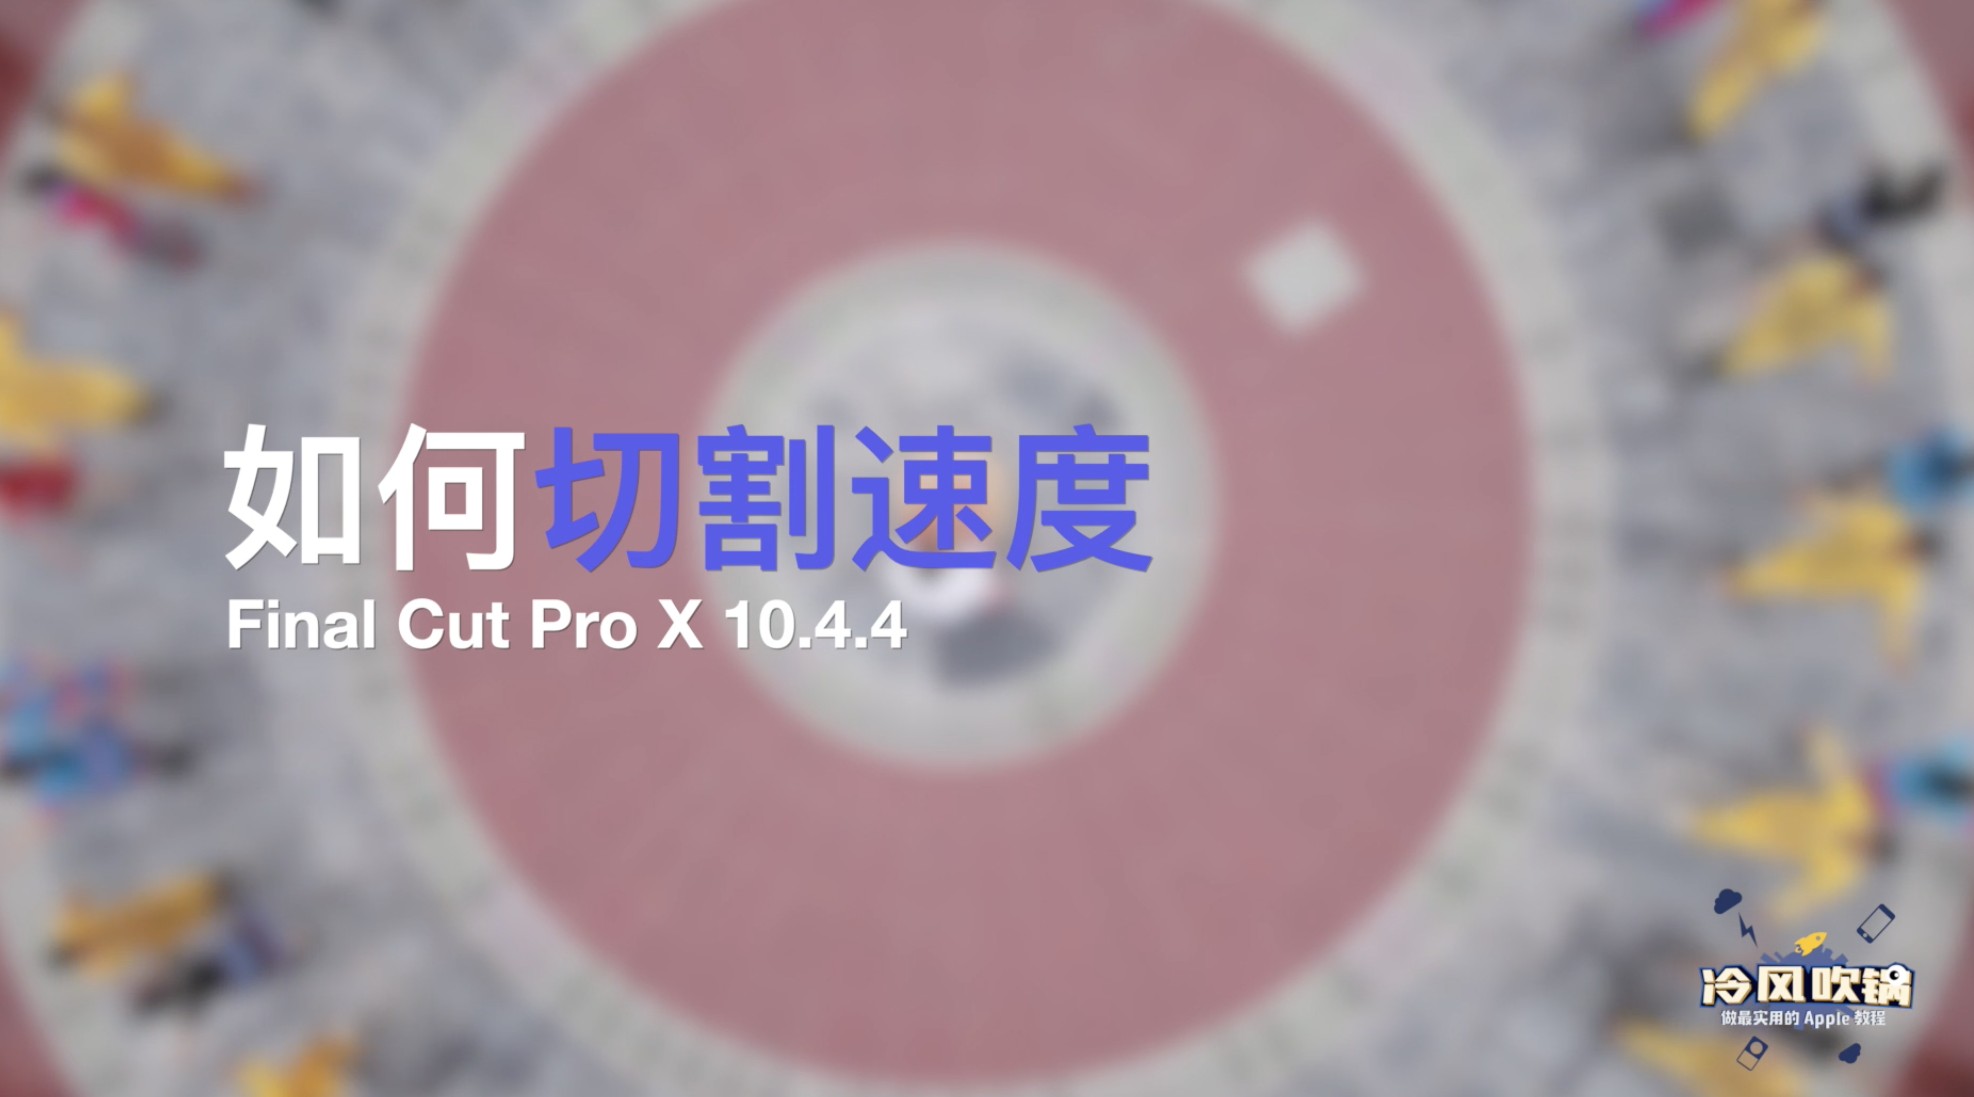 Final Cut Pro X 如何切割速度 